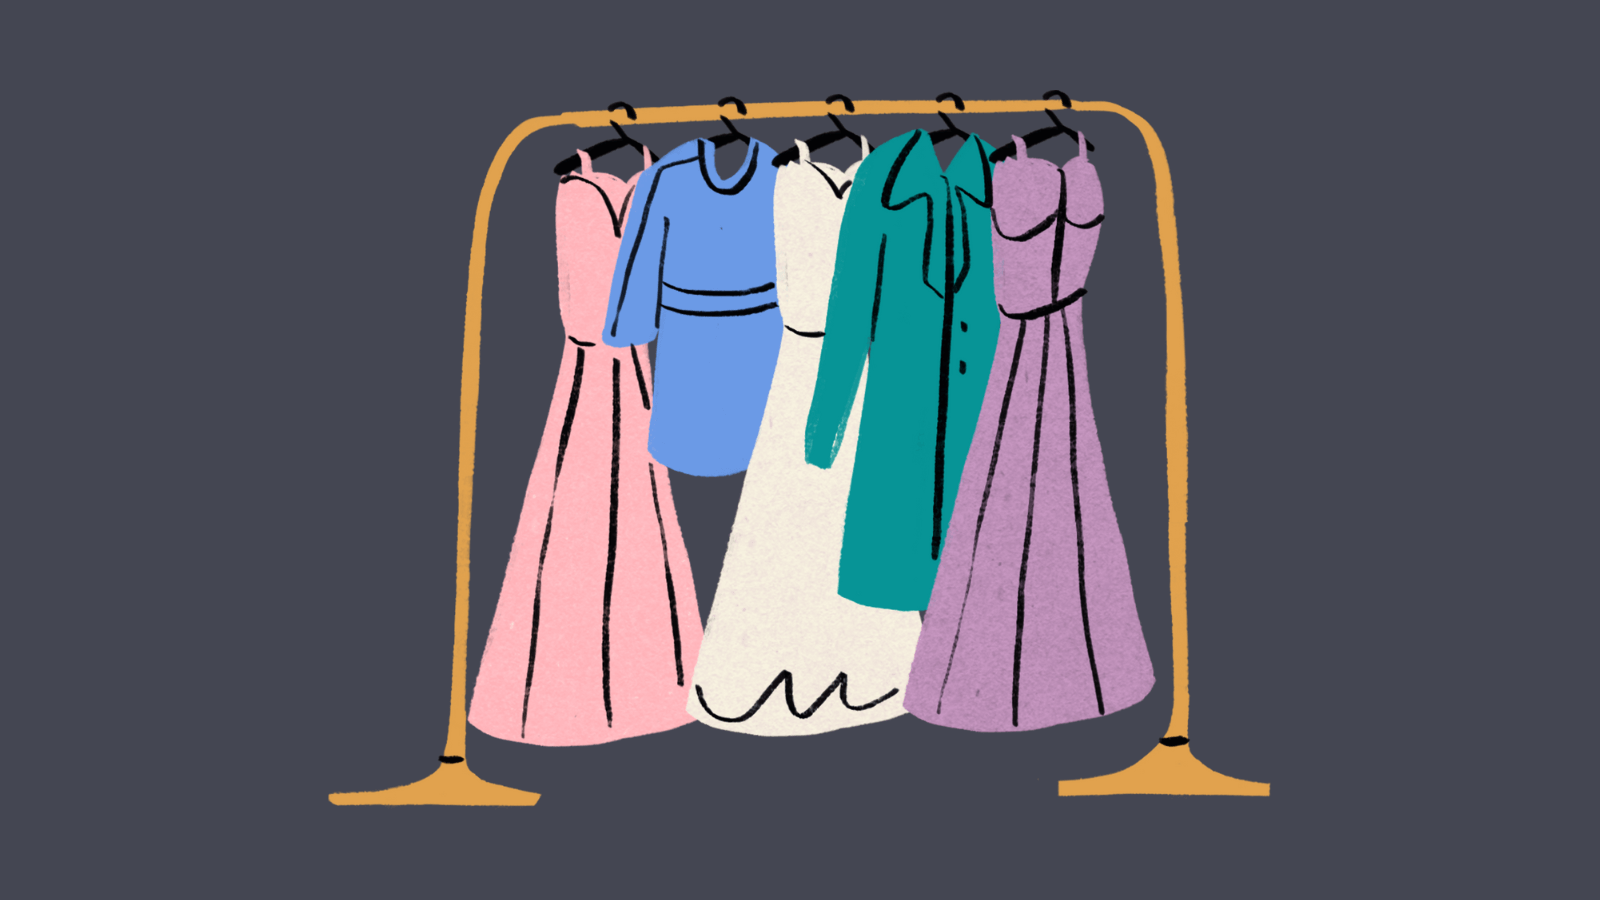 A rack of dresses